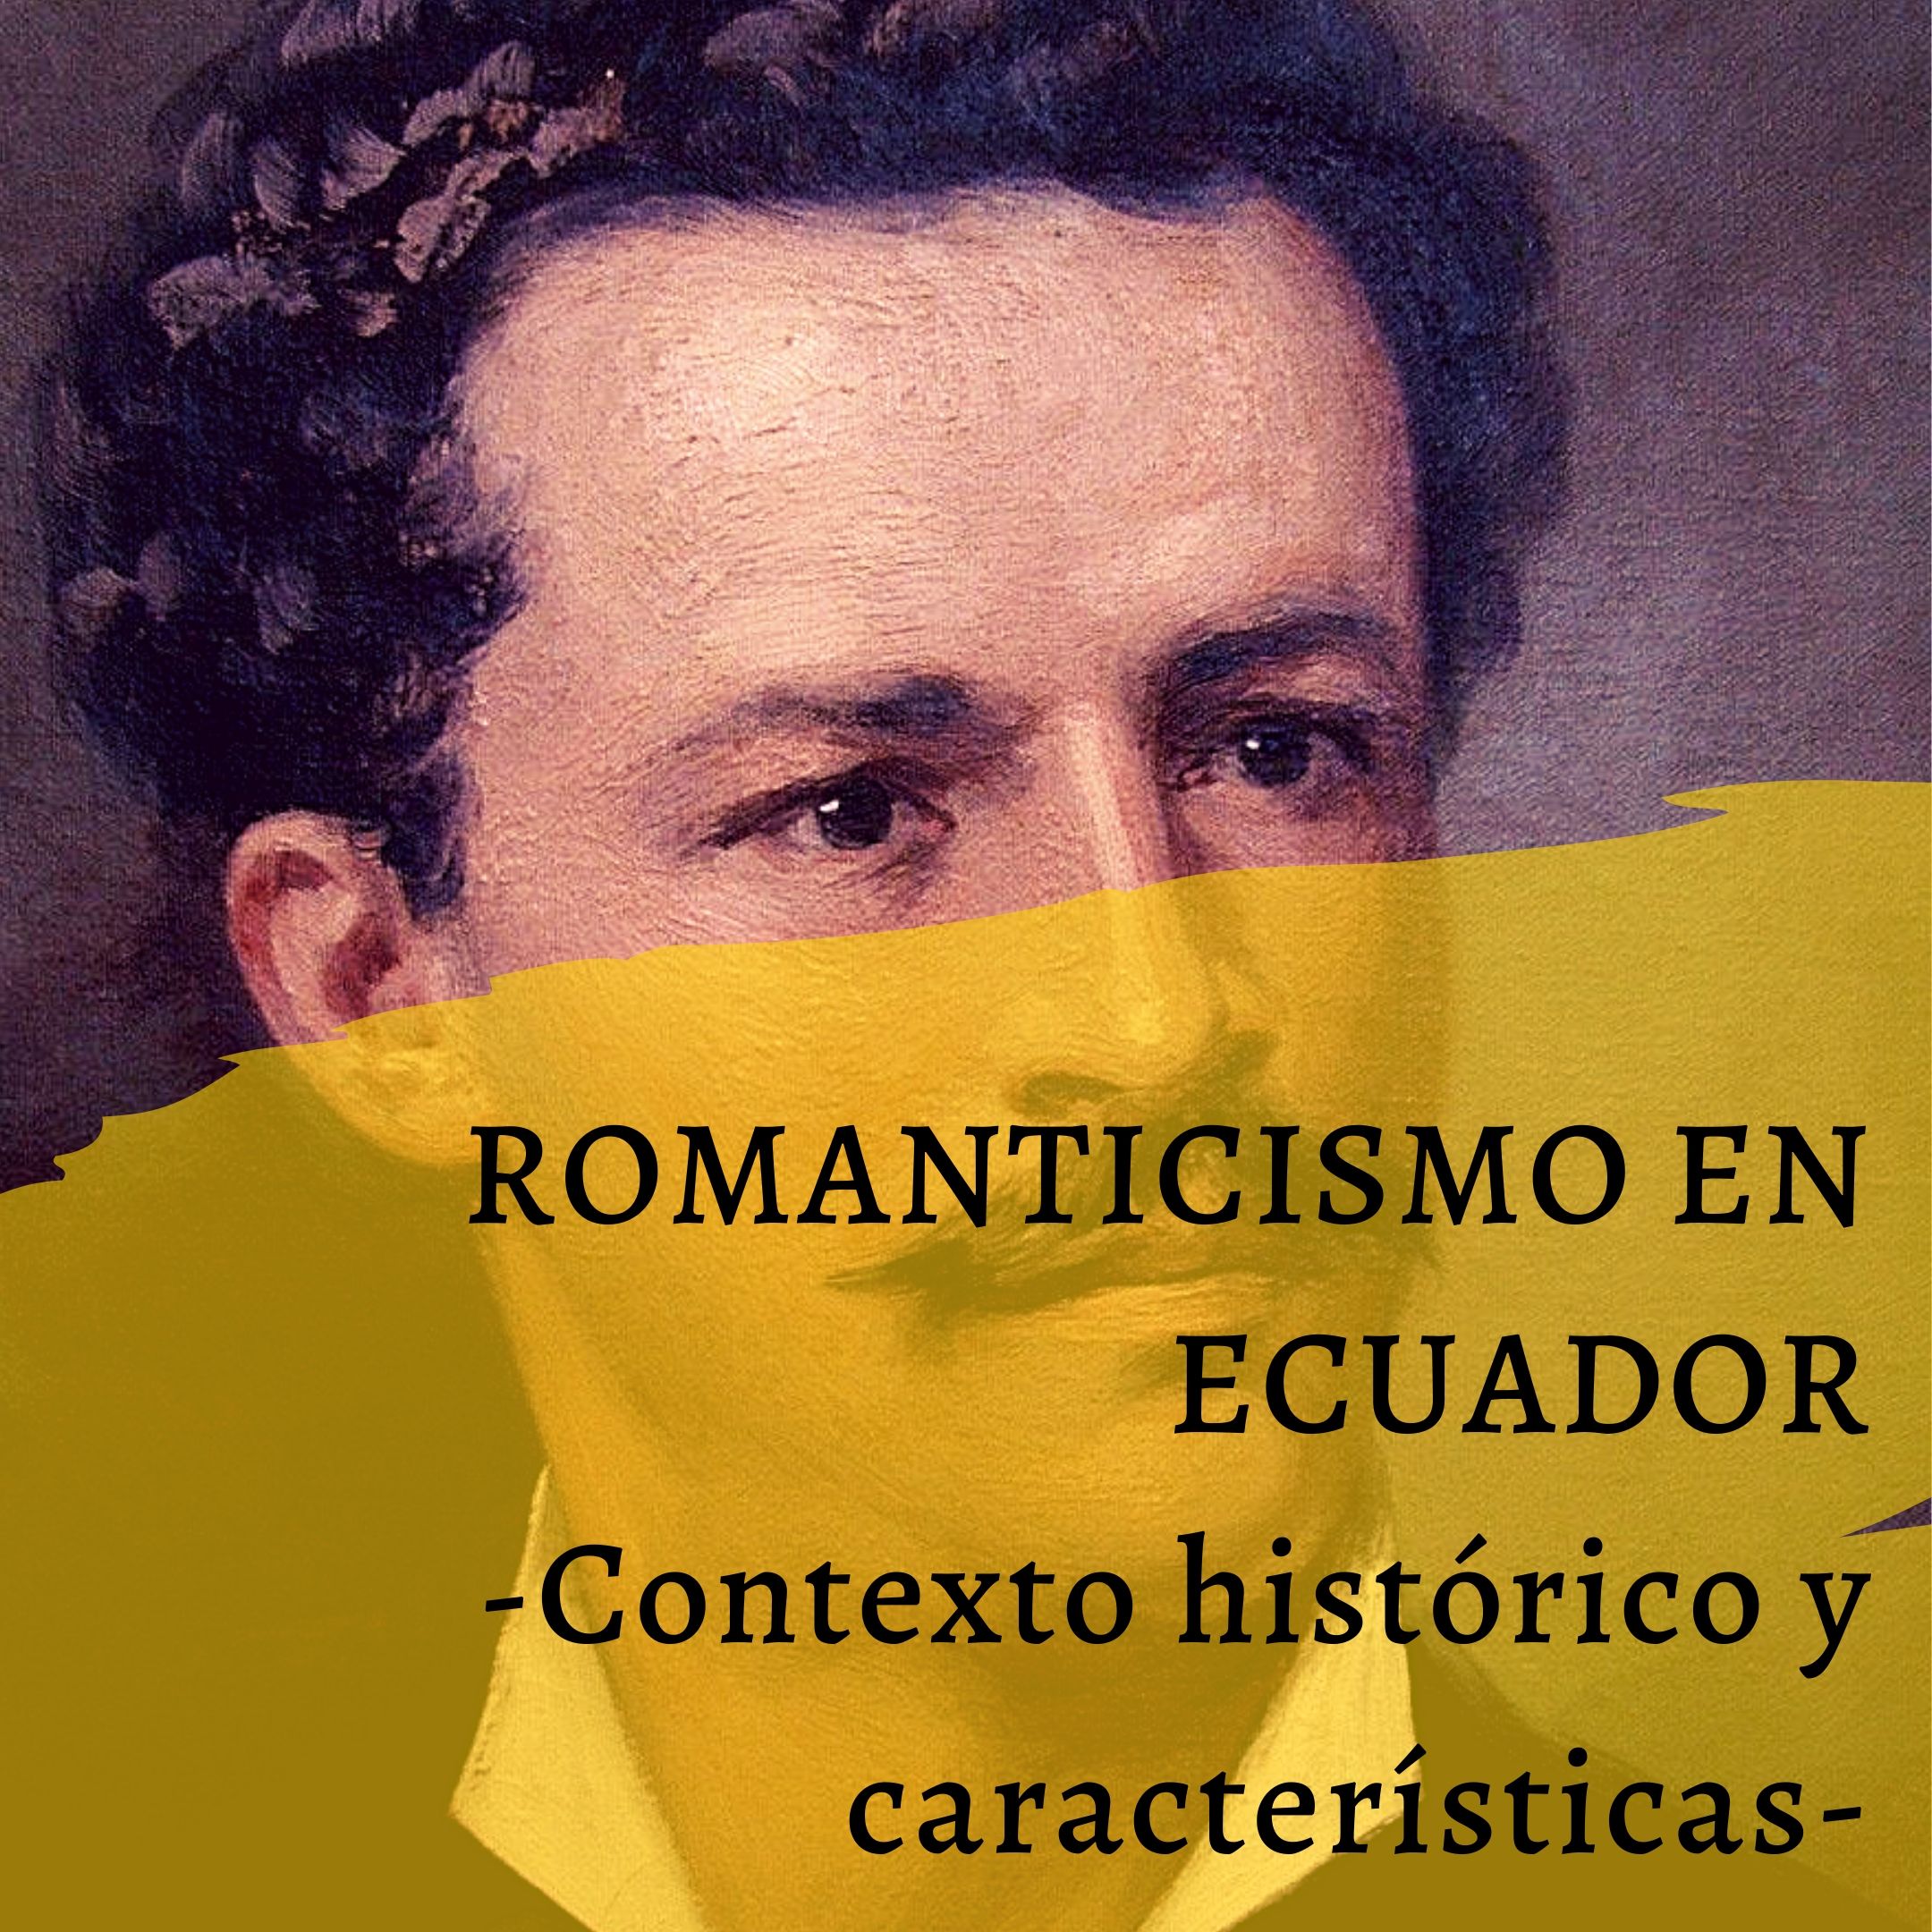 El romanticismo en Ecuador, características y representantes.